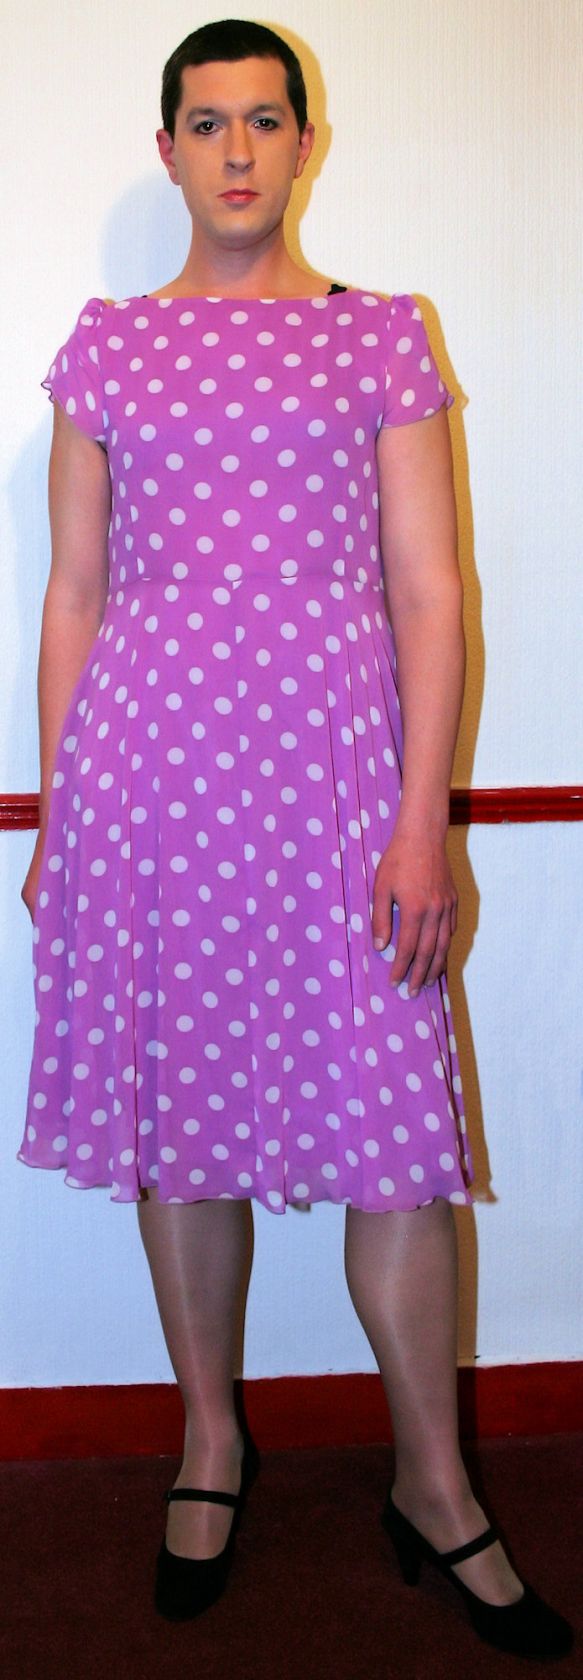 Chris Millett - Pink dress & tights_5767812522_o